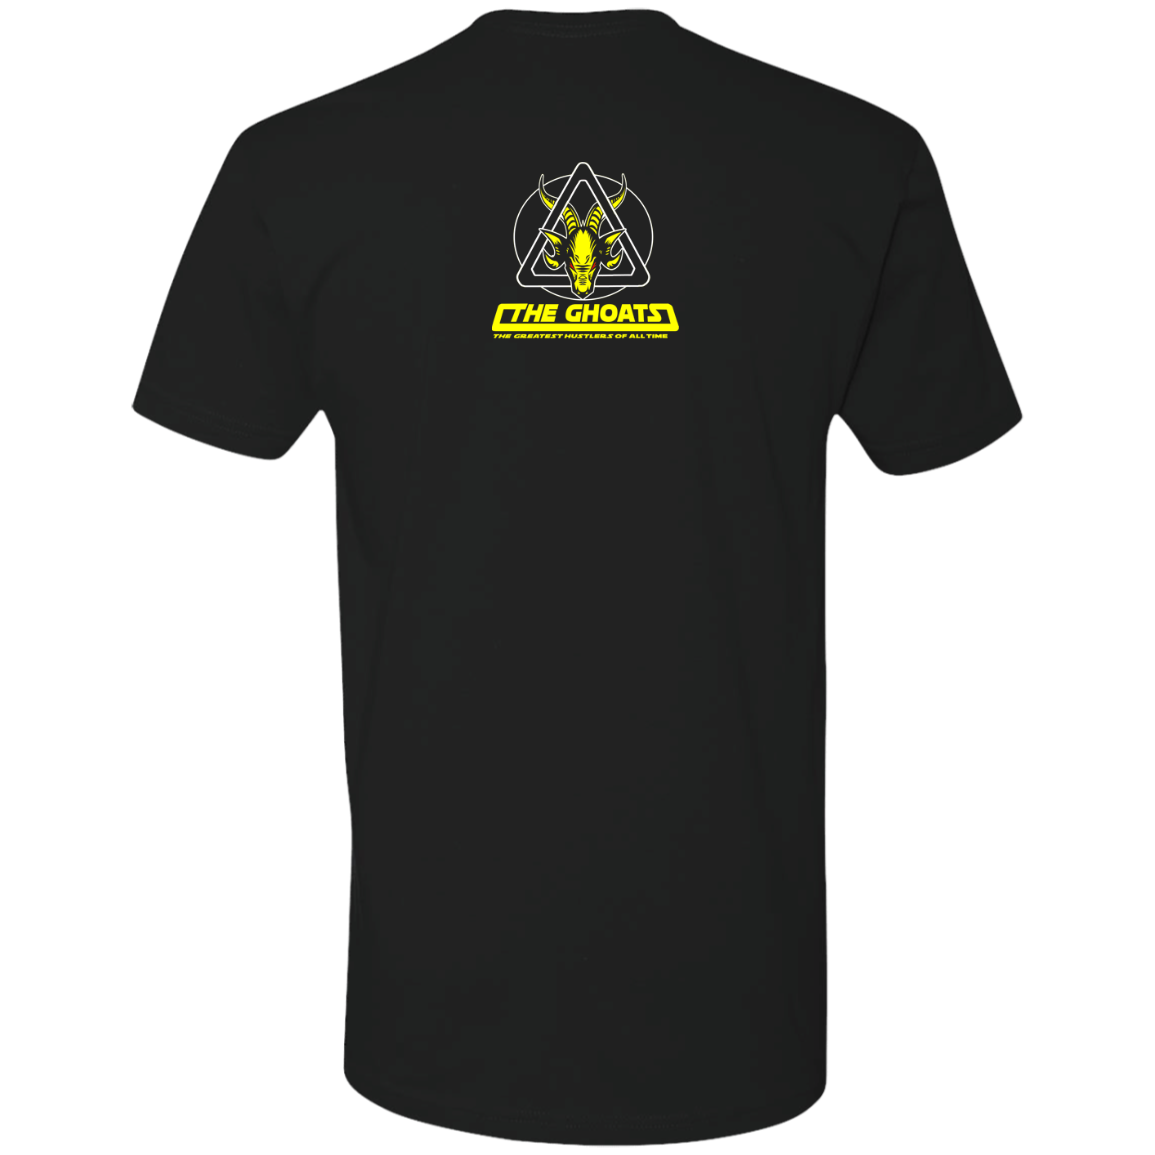 The GHOATS Custom Design. # 39 The Dark Side of Hustling. Premium Short Sleeve T-Shirt